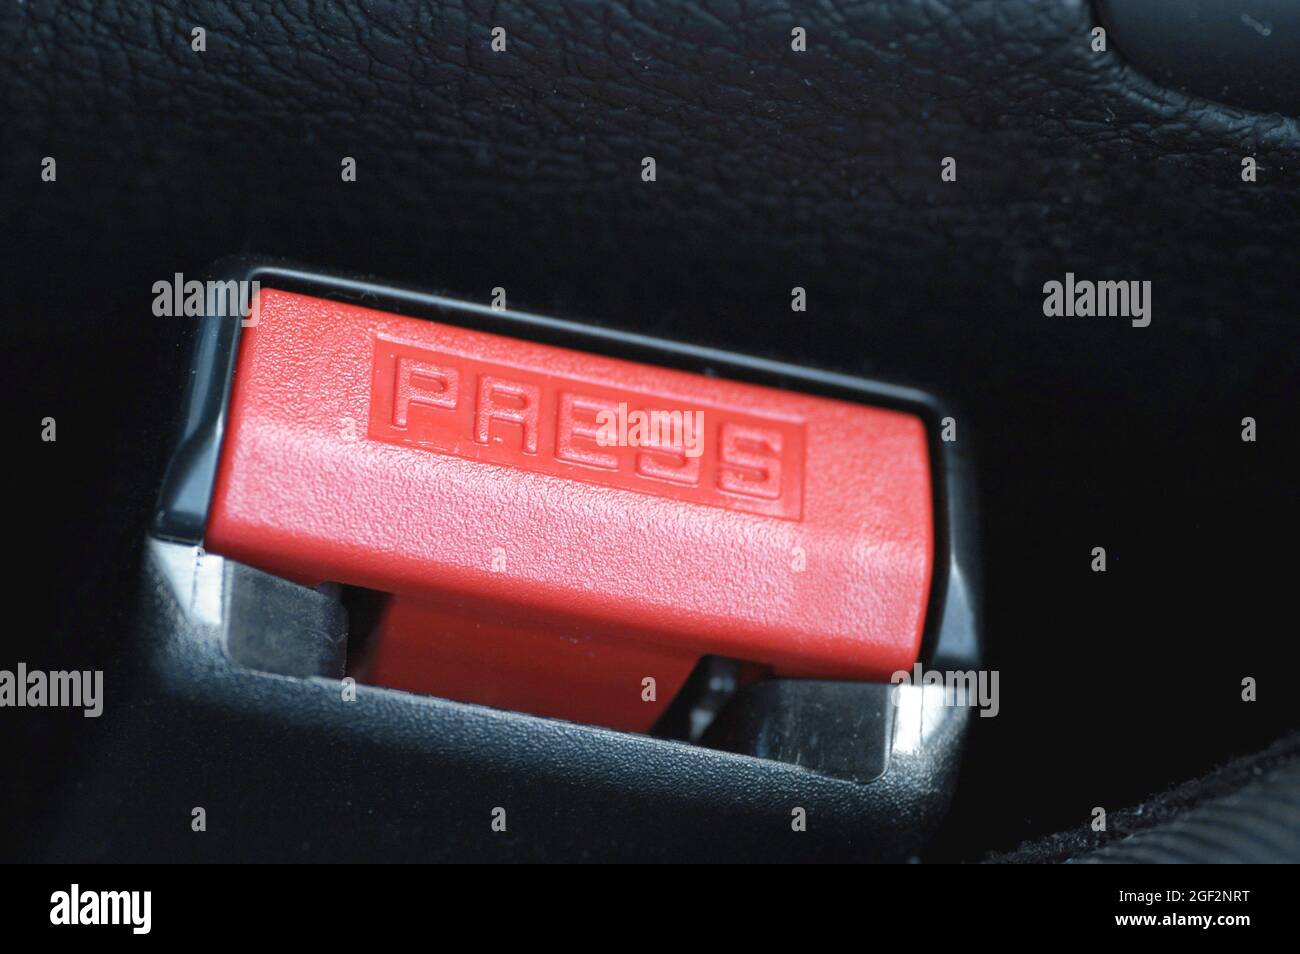 Boucle de ceinture pour ceinture de sécurité, presse, Allemagne Banque D'Images